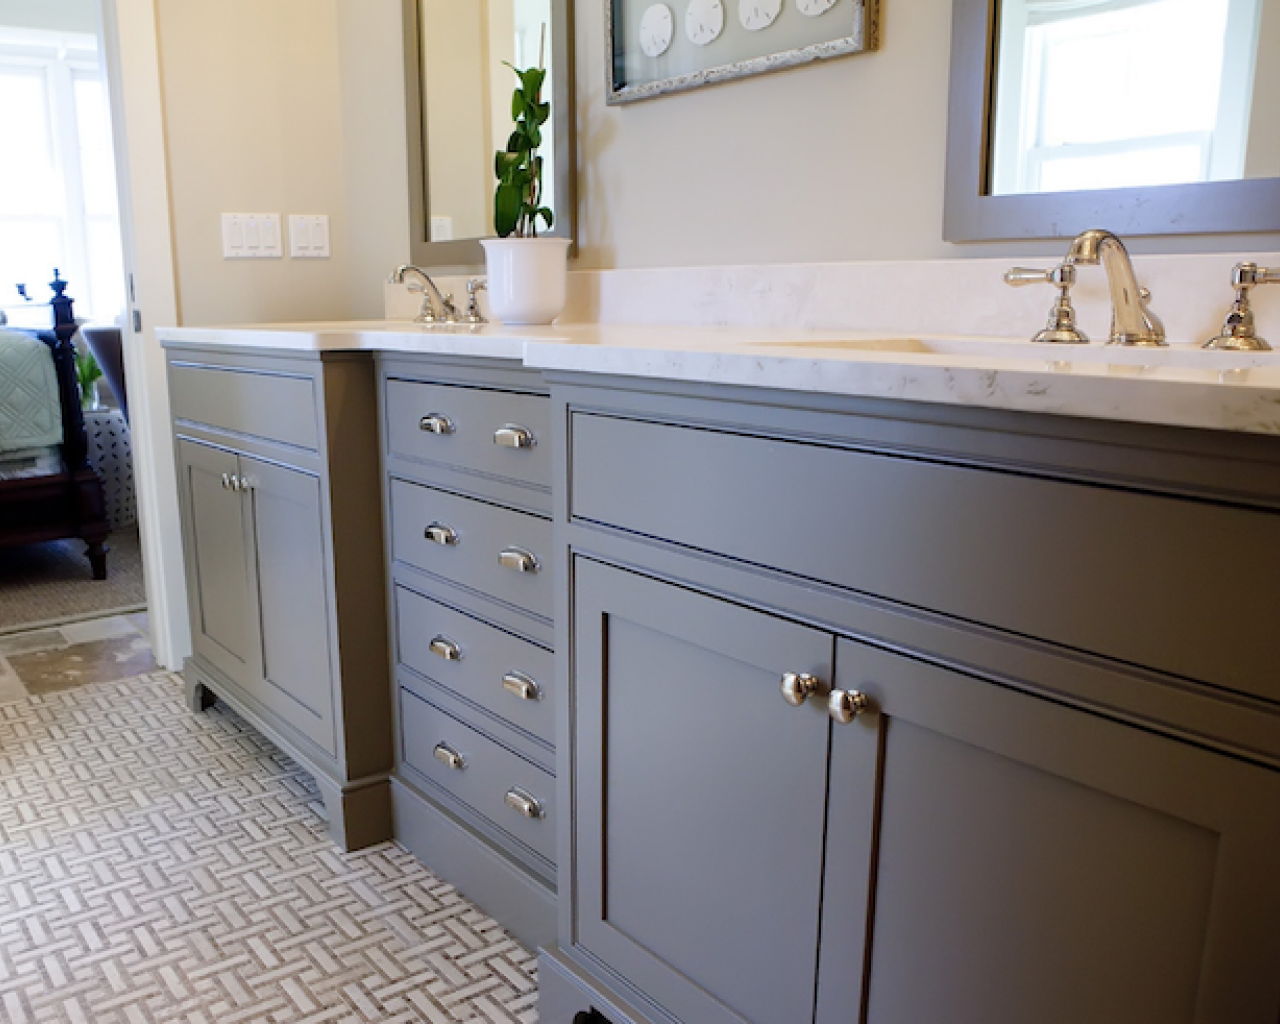 bathrooms-white-gray-basketweave-tiles-floor-gray-bathroom-cabinets-bathroom-ideas-basket-weave-tile.com-room-rooms-rooms-white-tiles-tiles-floor-white-bathroom-tiles-white-tile-floors-42500